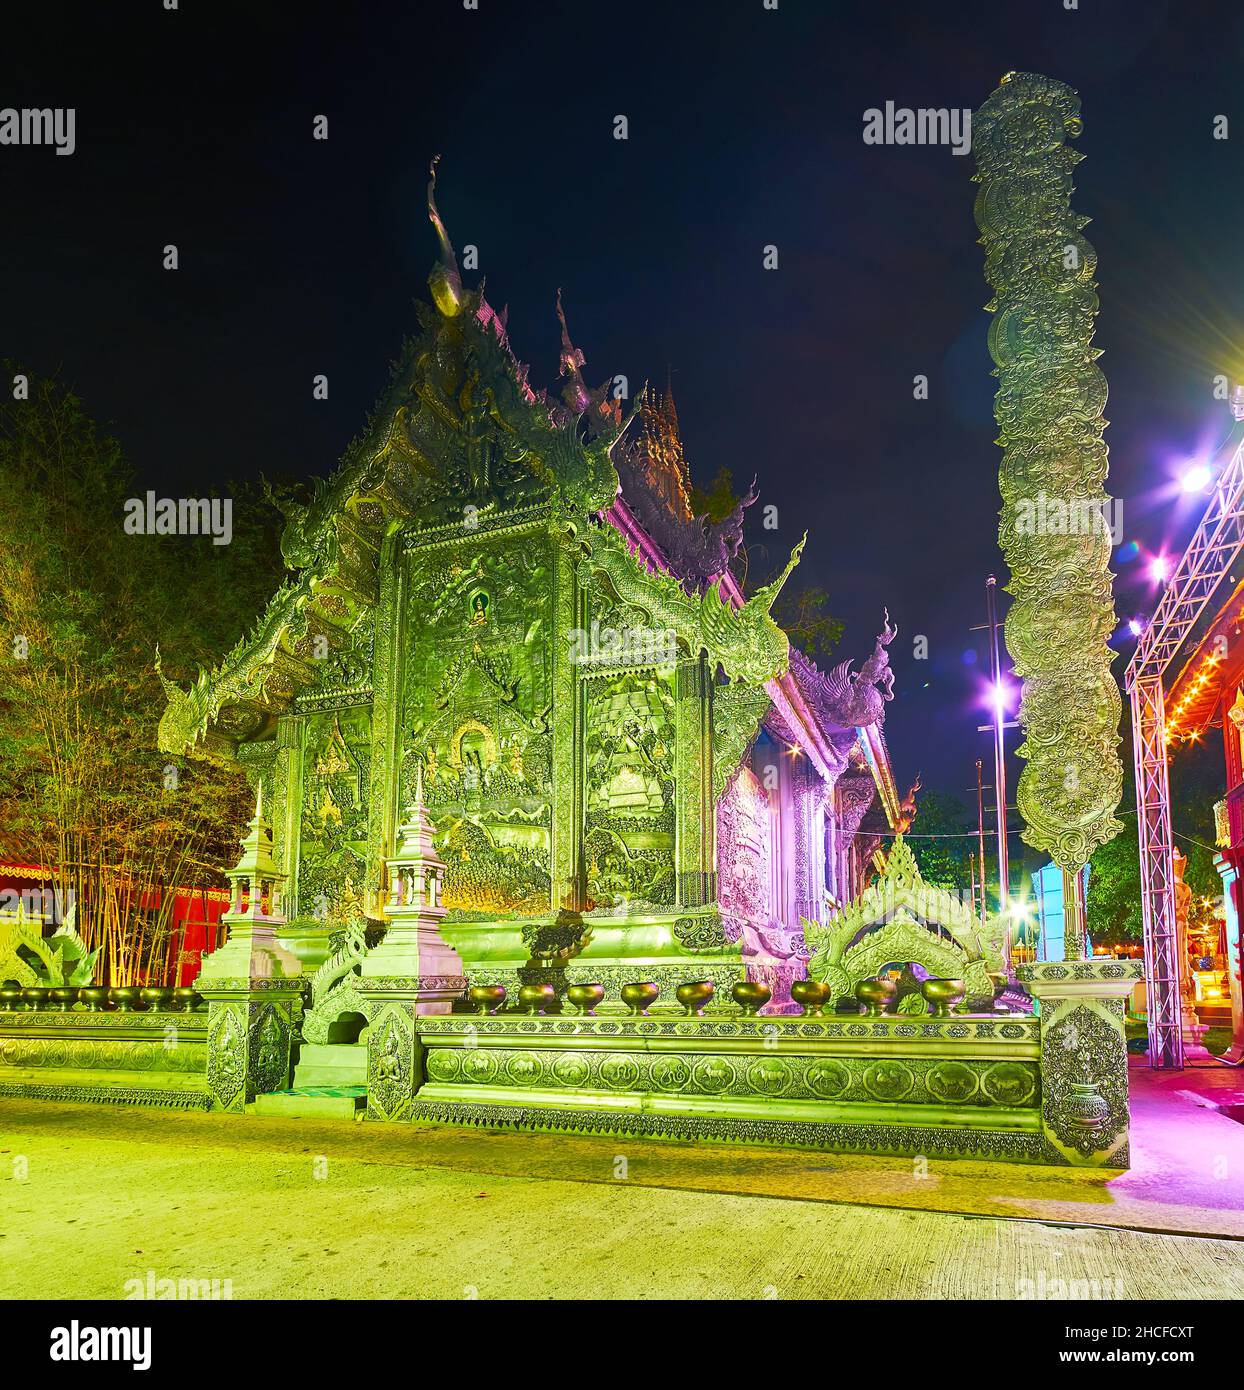 Les lumières lumineuses du soir décorent l'arrière du Temple d'argent (Wat Sri Suphan) et le pilier bouddhiste à côté, Chiang Mai, Thaïlande Banque D'Images